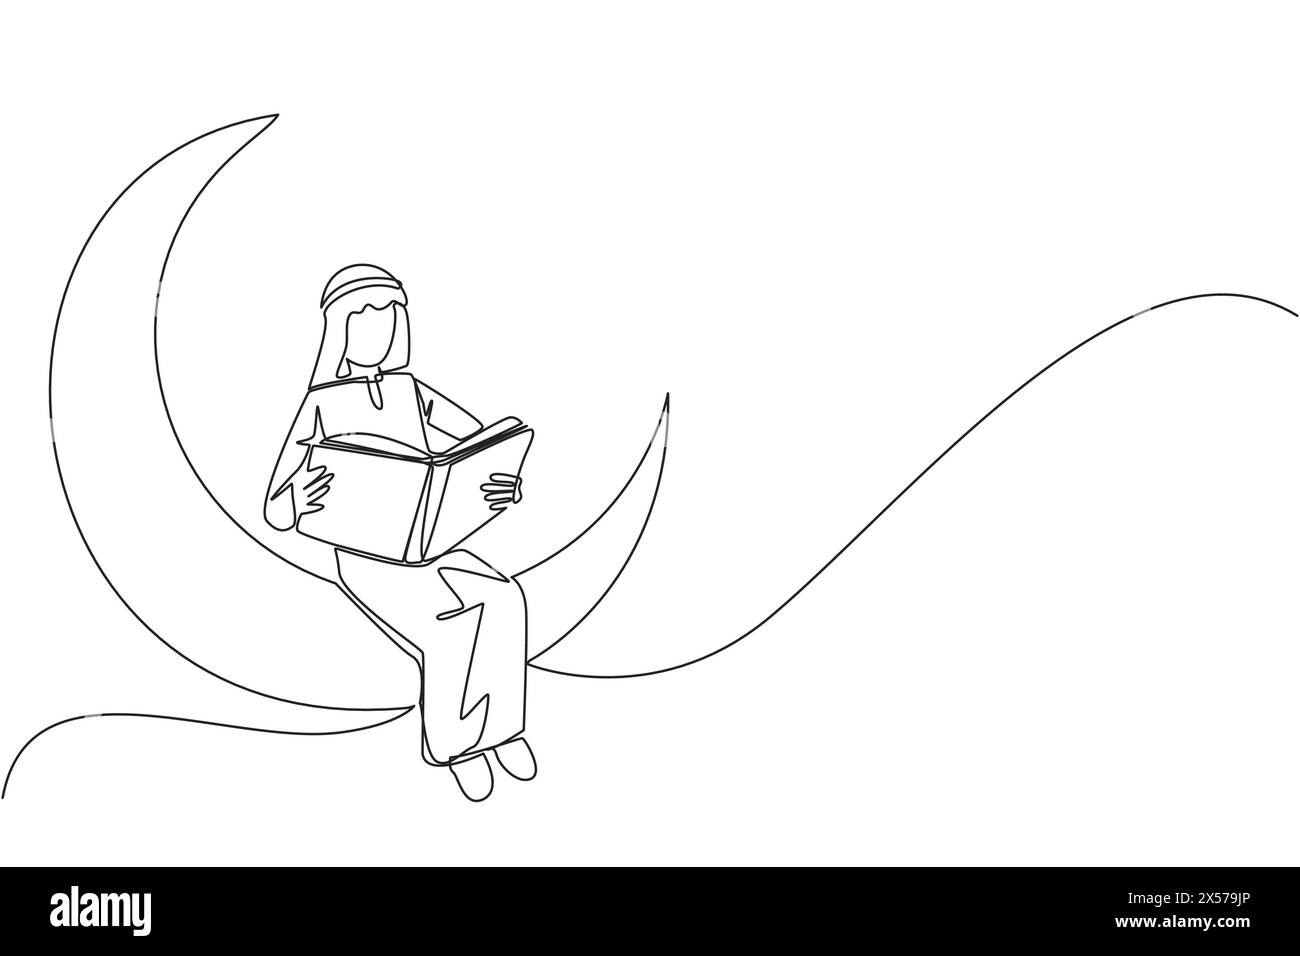 Simple une ligne dessinant un homme arabe assis sur le croissant de lune lisant un livre. Métaphore de la lecture d'une histoire de fées avant de dormir. Lire jusqu'à tard. Love rea Illustration de Vecteur